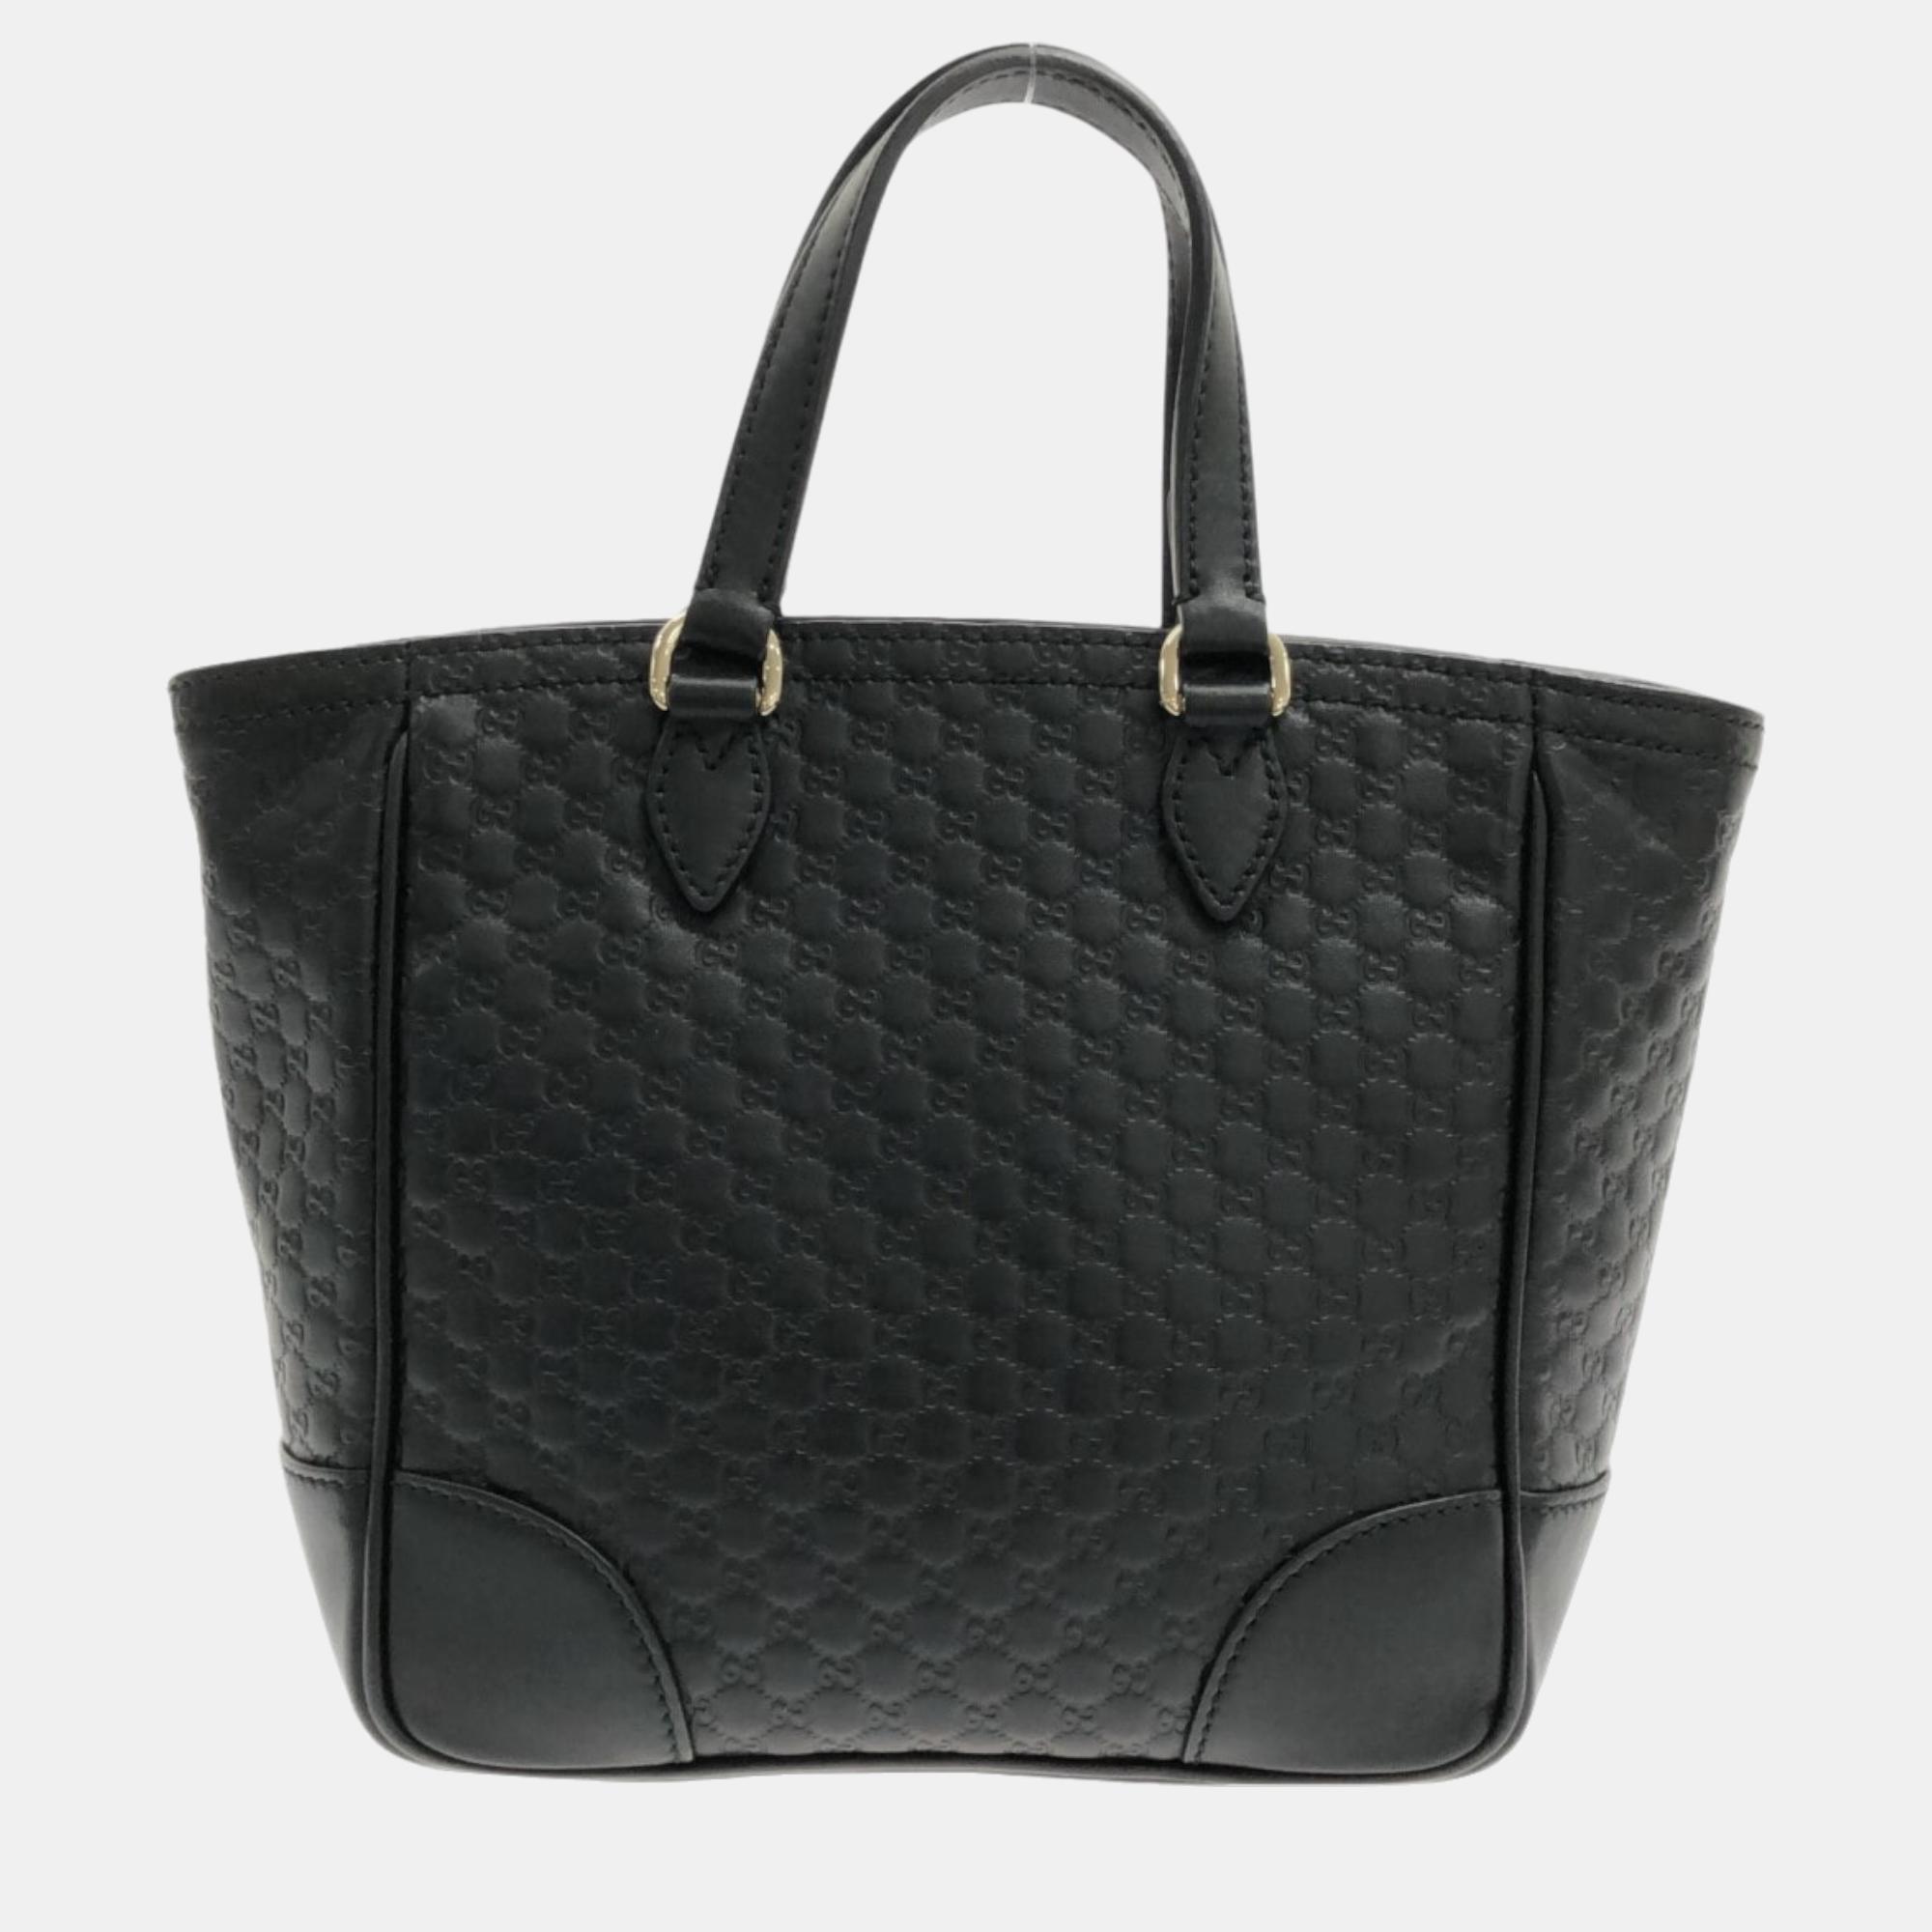 Gucci Black Microguccissima Leather Small Bree Tote Bag